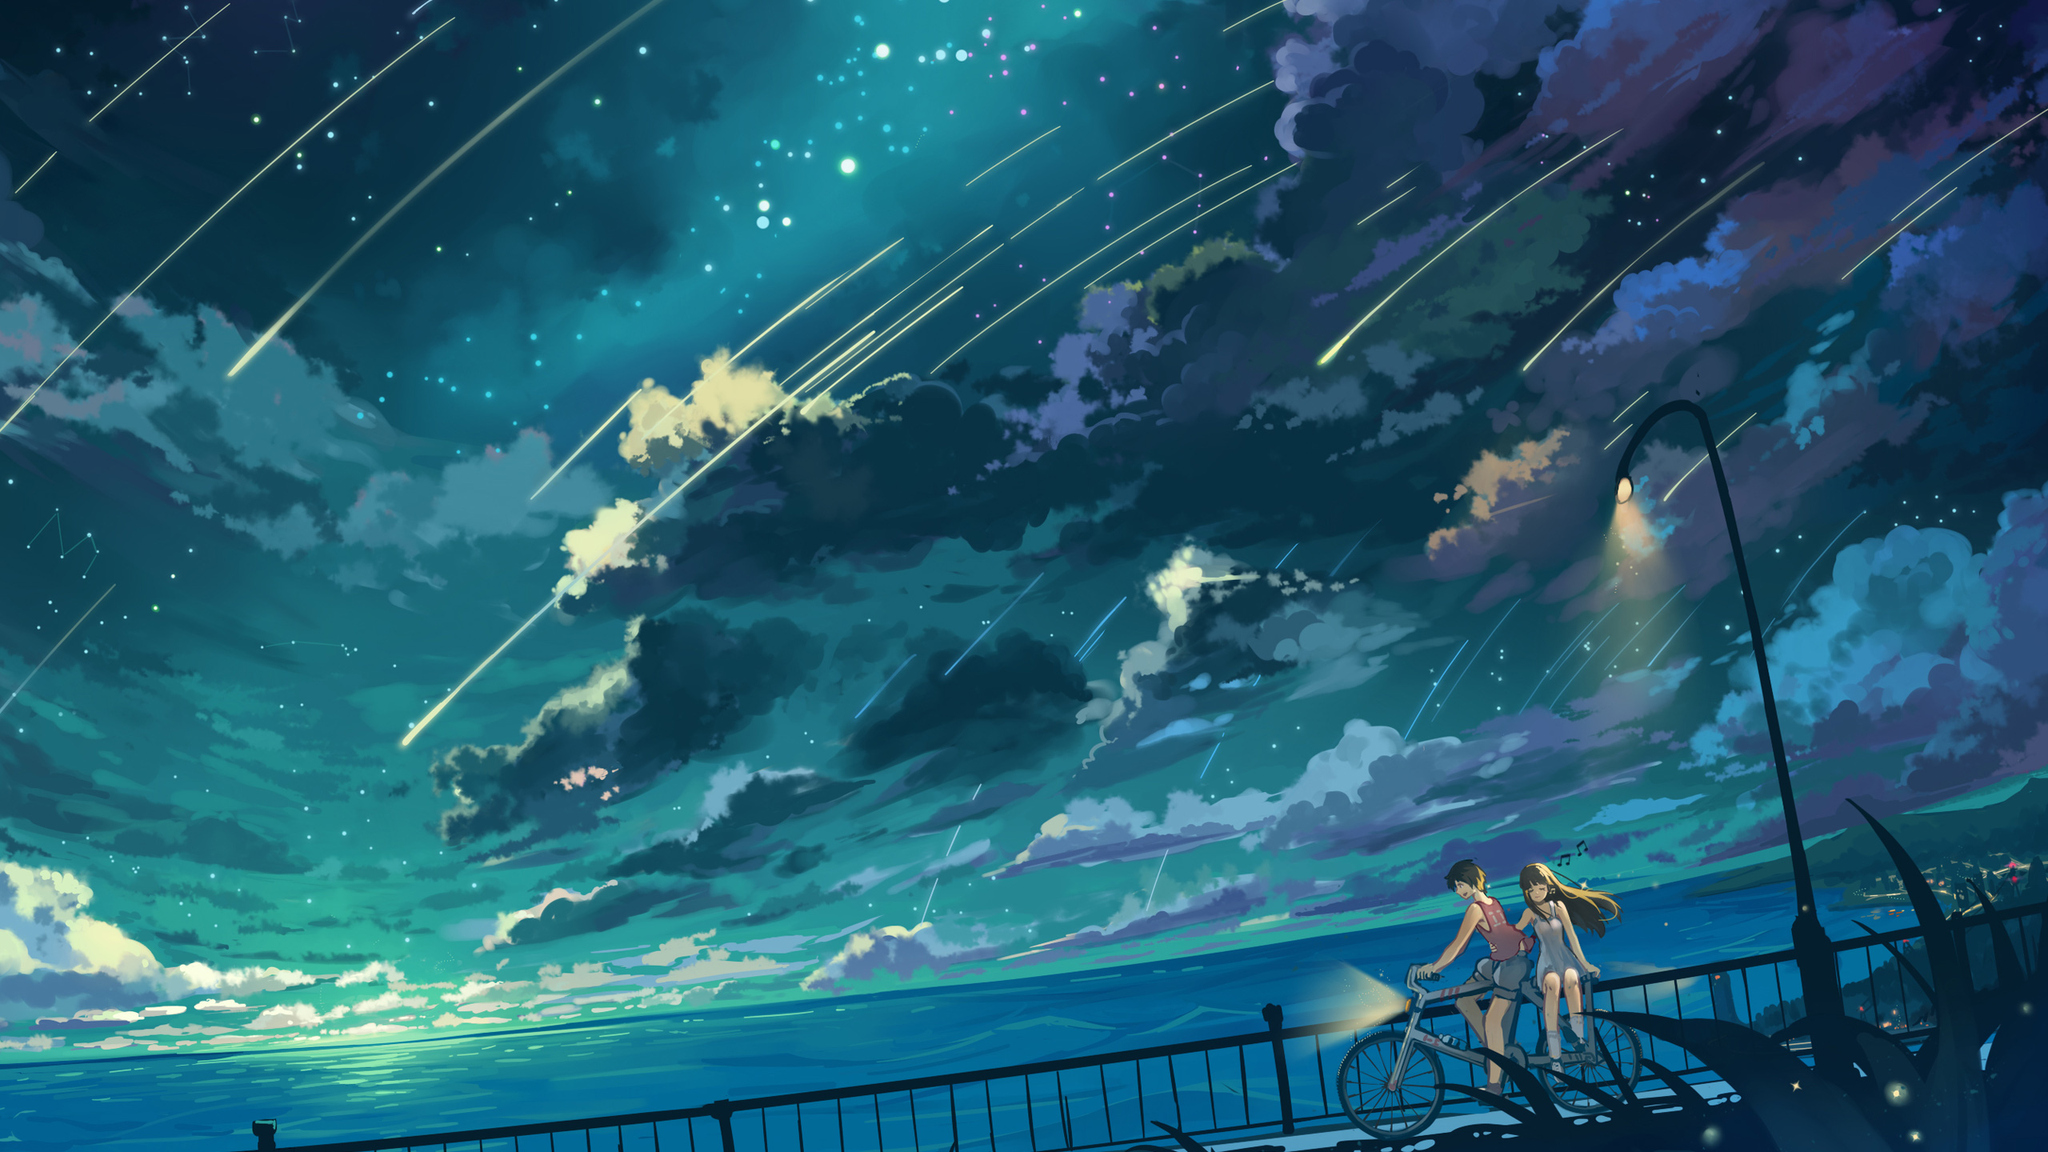 Cùng tận hưởng những chuyến đi đạp xe đầy sảng khoái với hình ảnh cô gái anime và cậu bé chạy trên đường, bao quanh là những đám mây và vô vàn ngôi sao đang lung linh trên bầu trời.